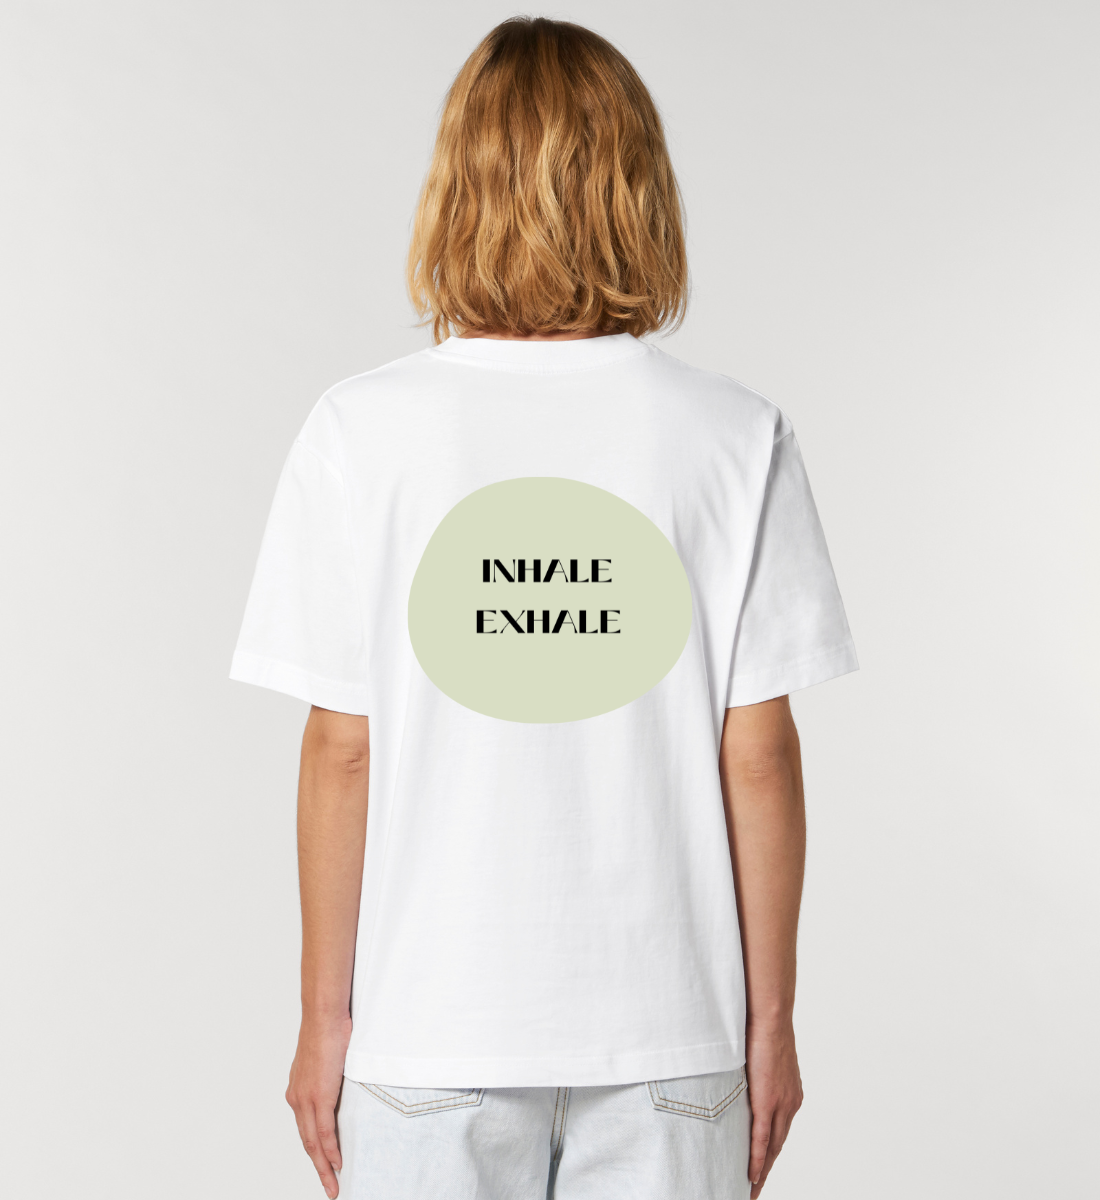 inhale exhale l yoga shirt weiß l nachhaltiges t-shirt l bio yoga kleidung l grüne und umweltfreundliche mode online shoppen